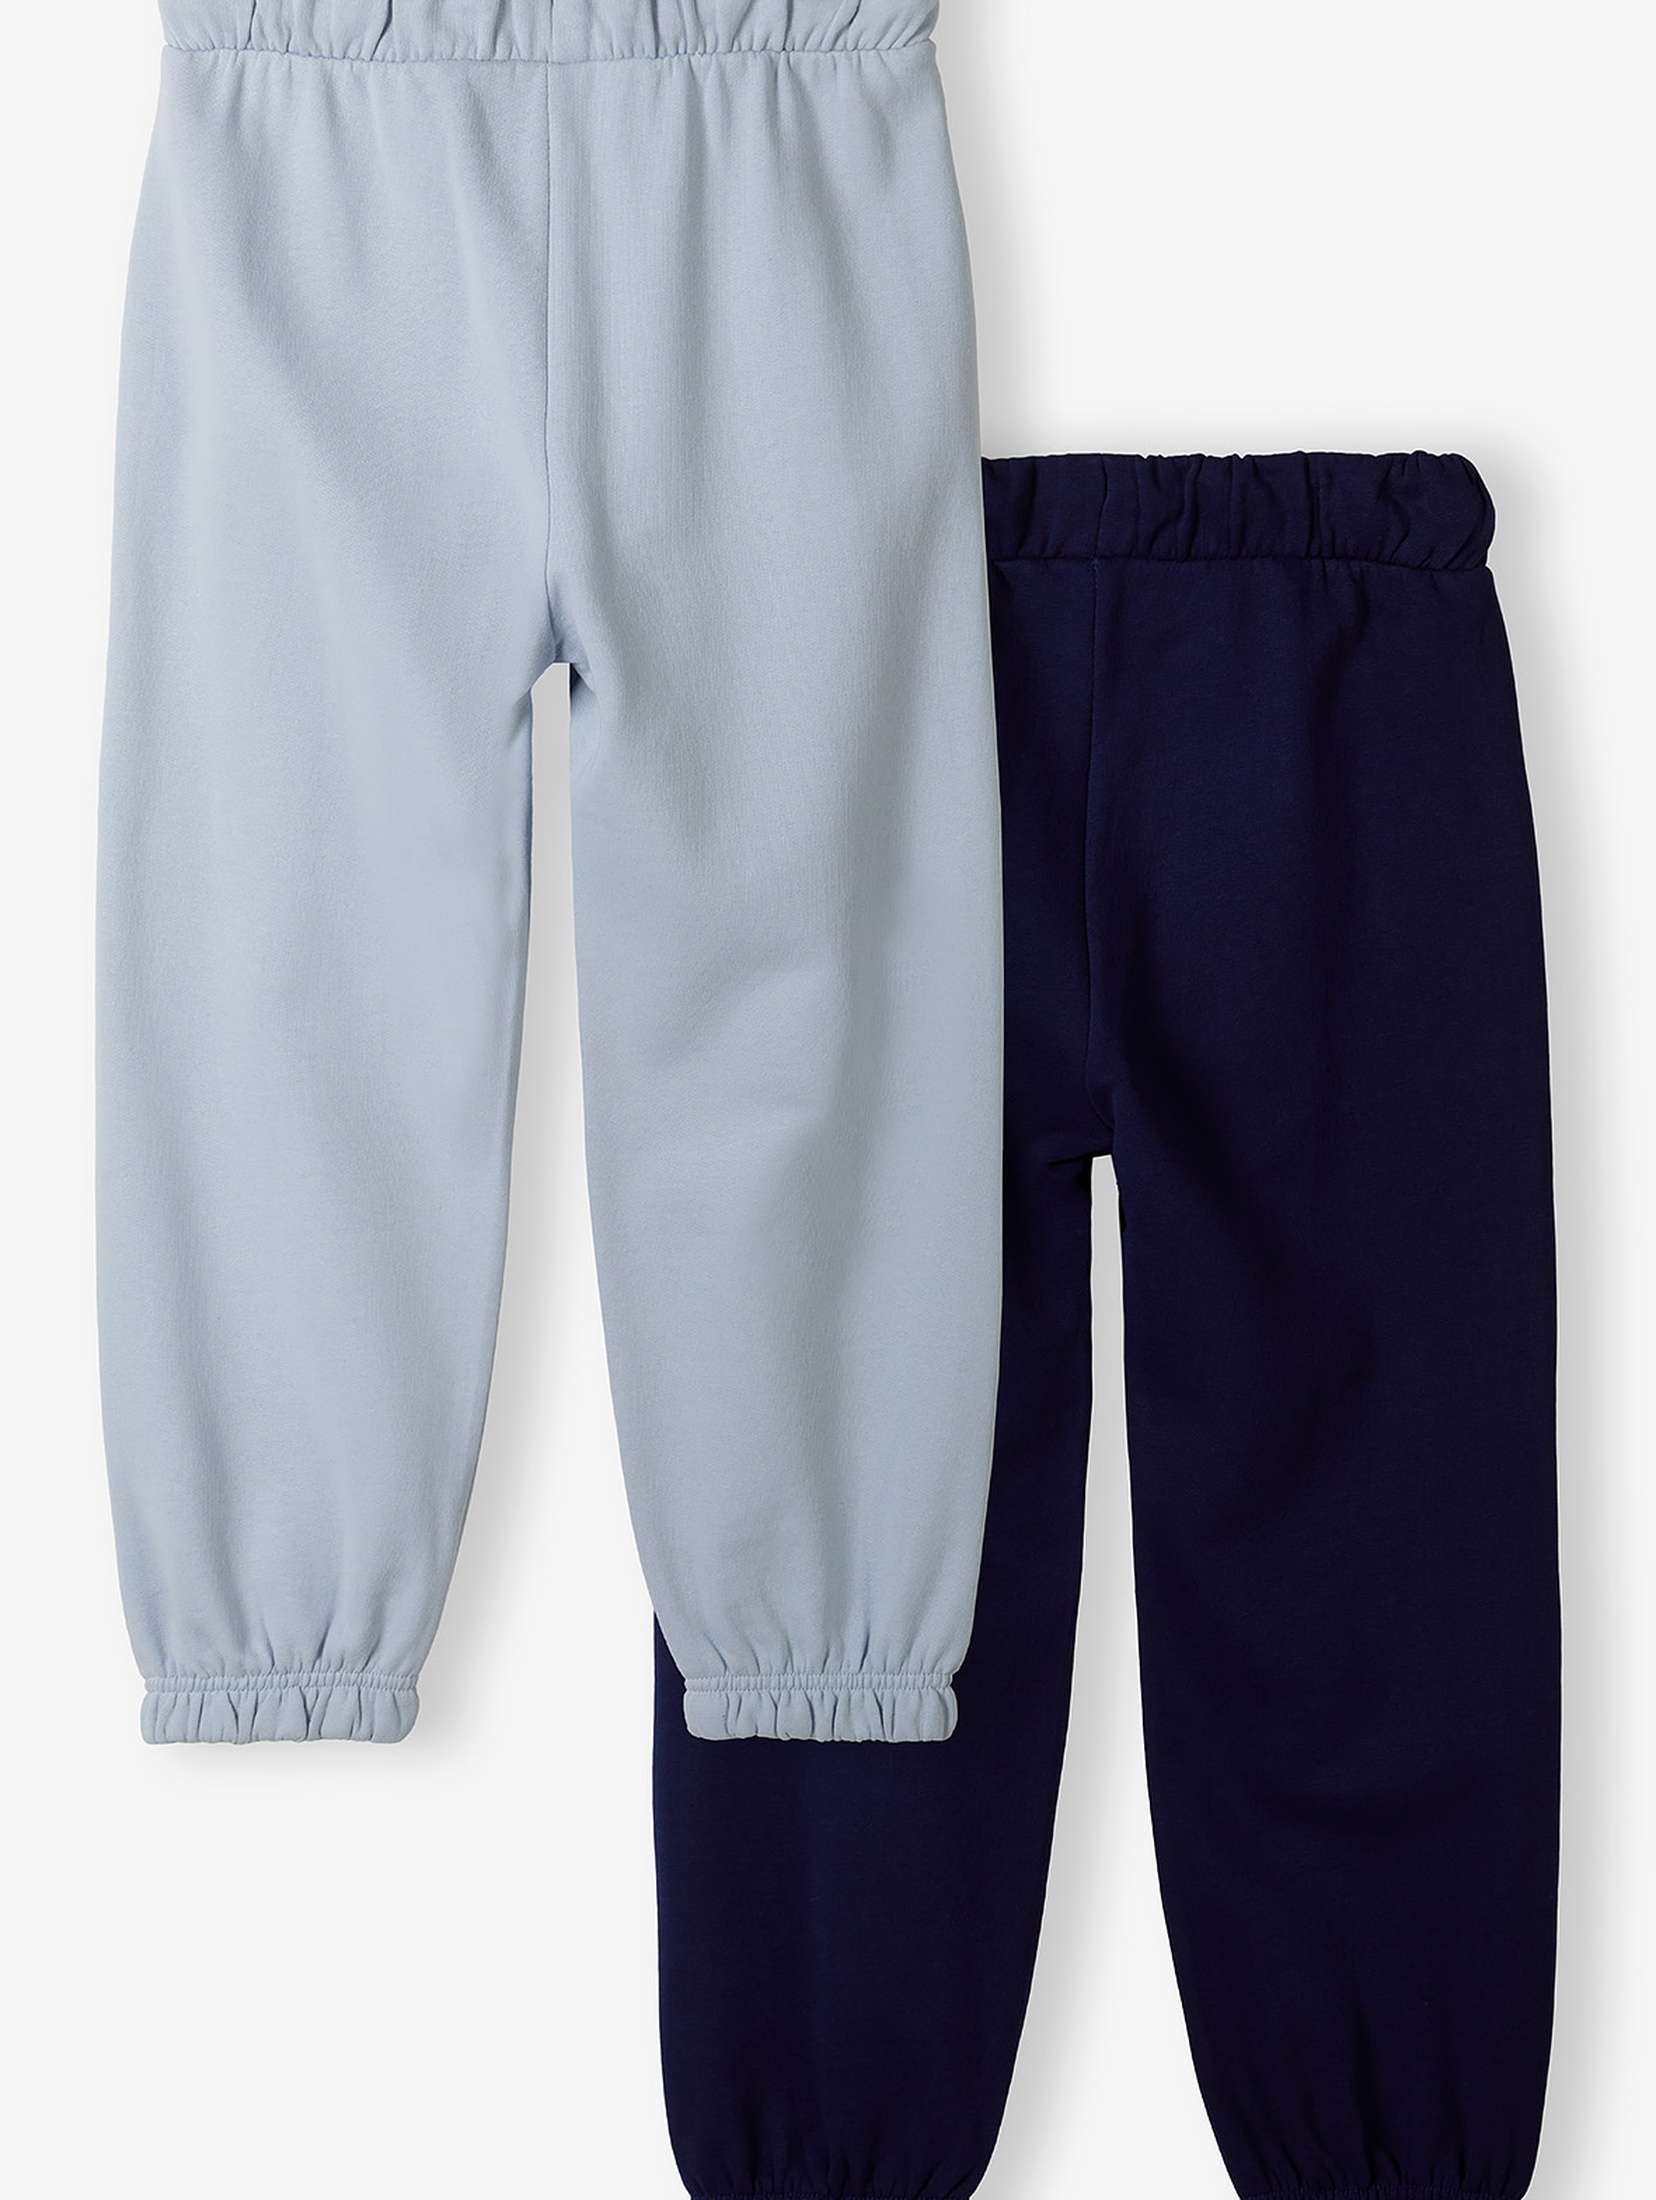 Spodnie dresowe 2pak - niebieskie i granatowe - Limited Edition